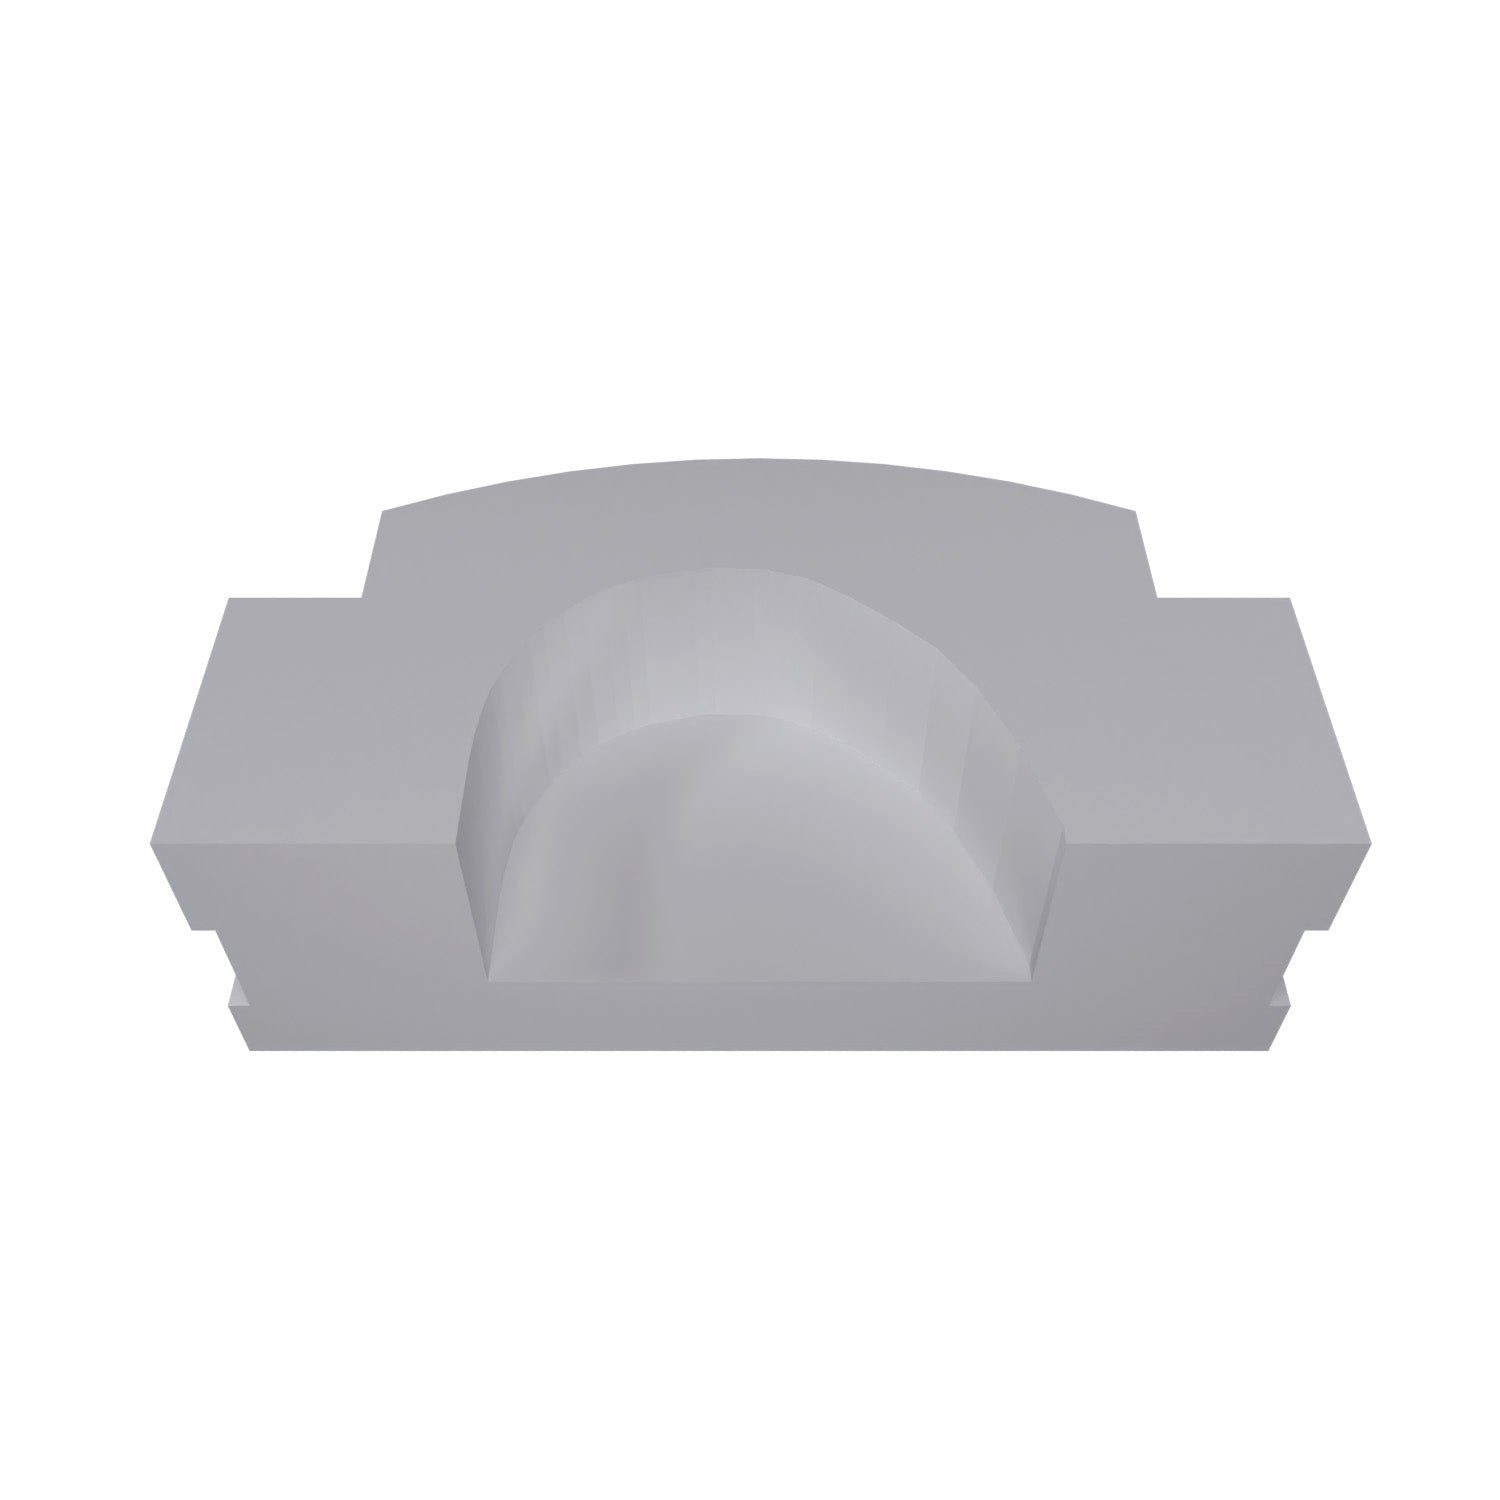 Ersa für Kippfenster Grau Kipplager Fensterbeschlag fossi3D MEA Mealon Kappe Verschluss kompatibel